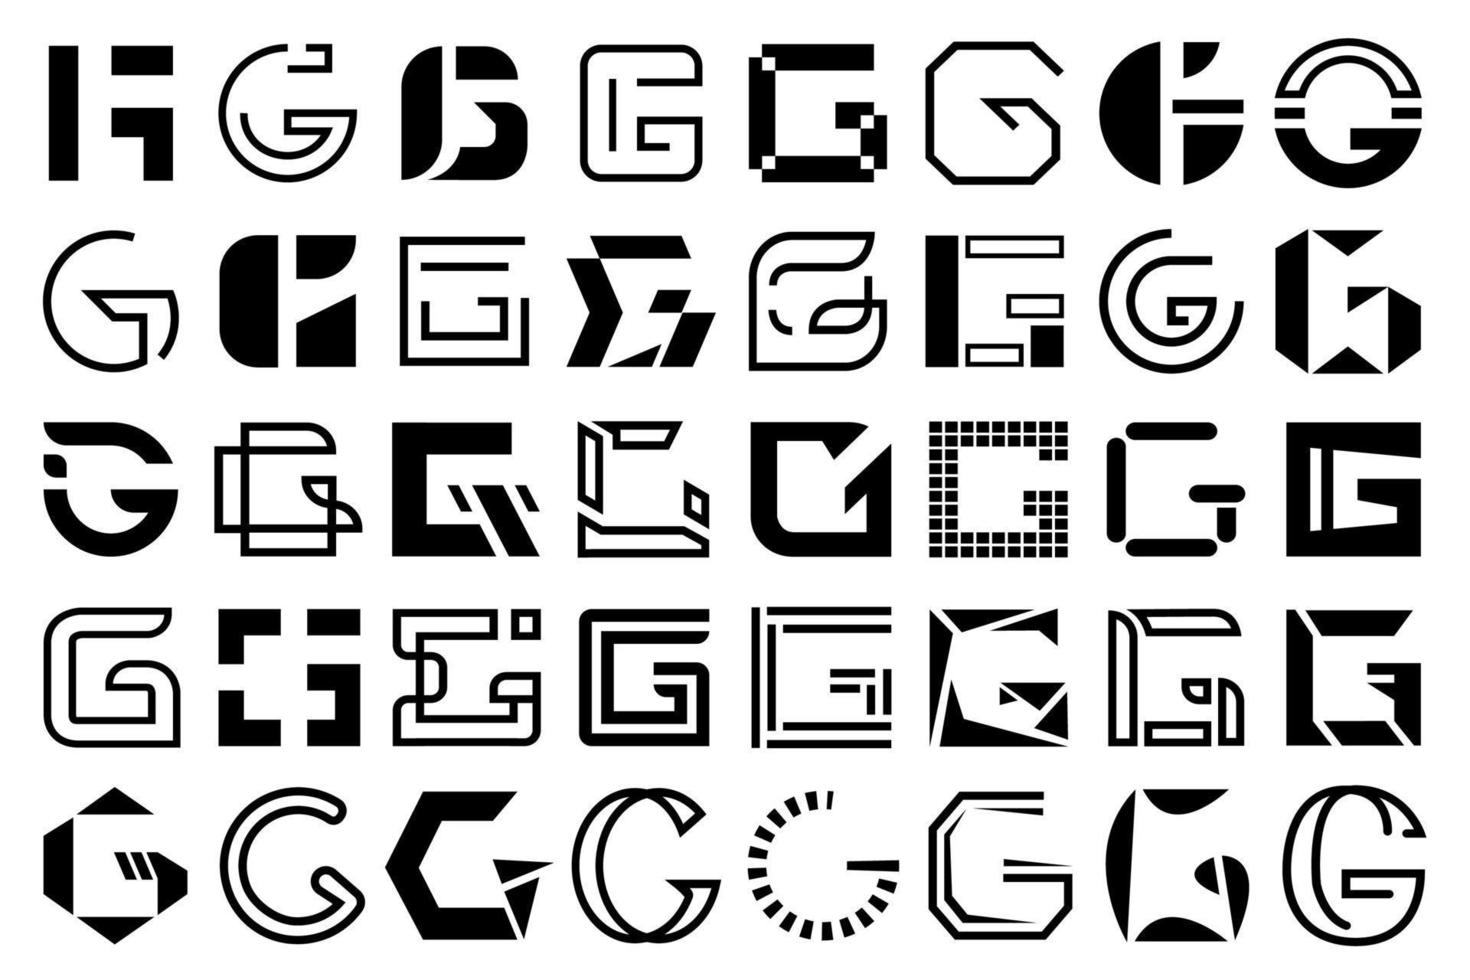 jeu de logo g, collection de lettre majuscule g en noir et blanc. lettre majuscule, collection de dessins géométriques vecteur